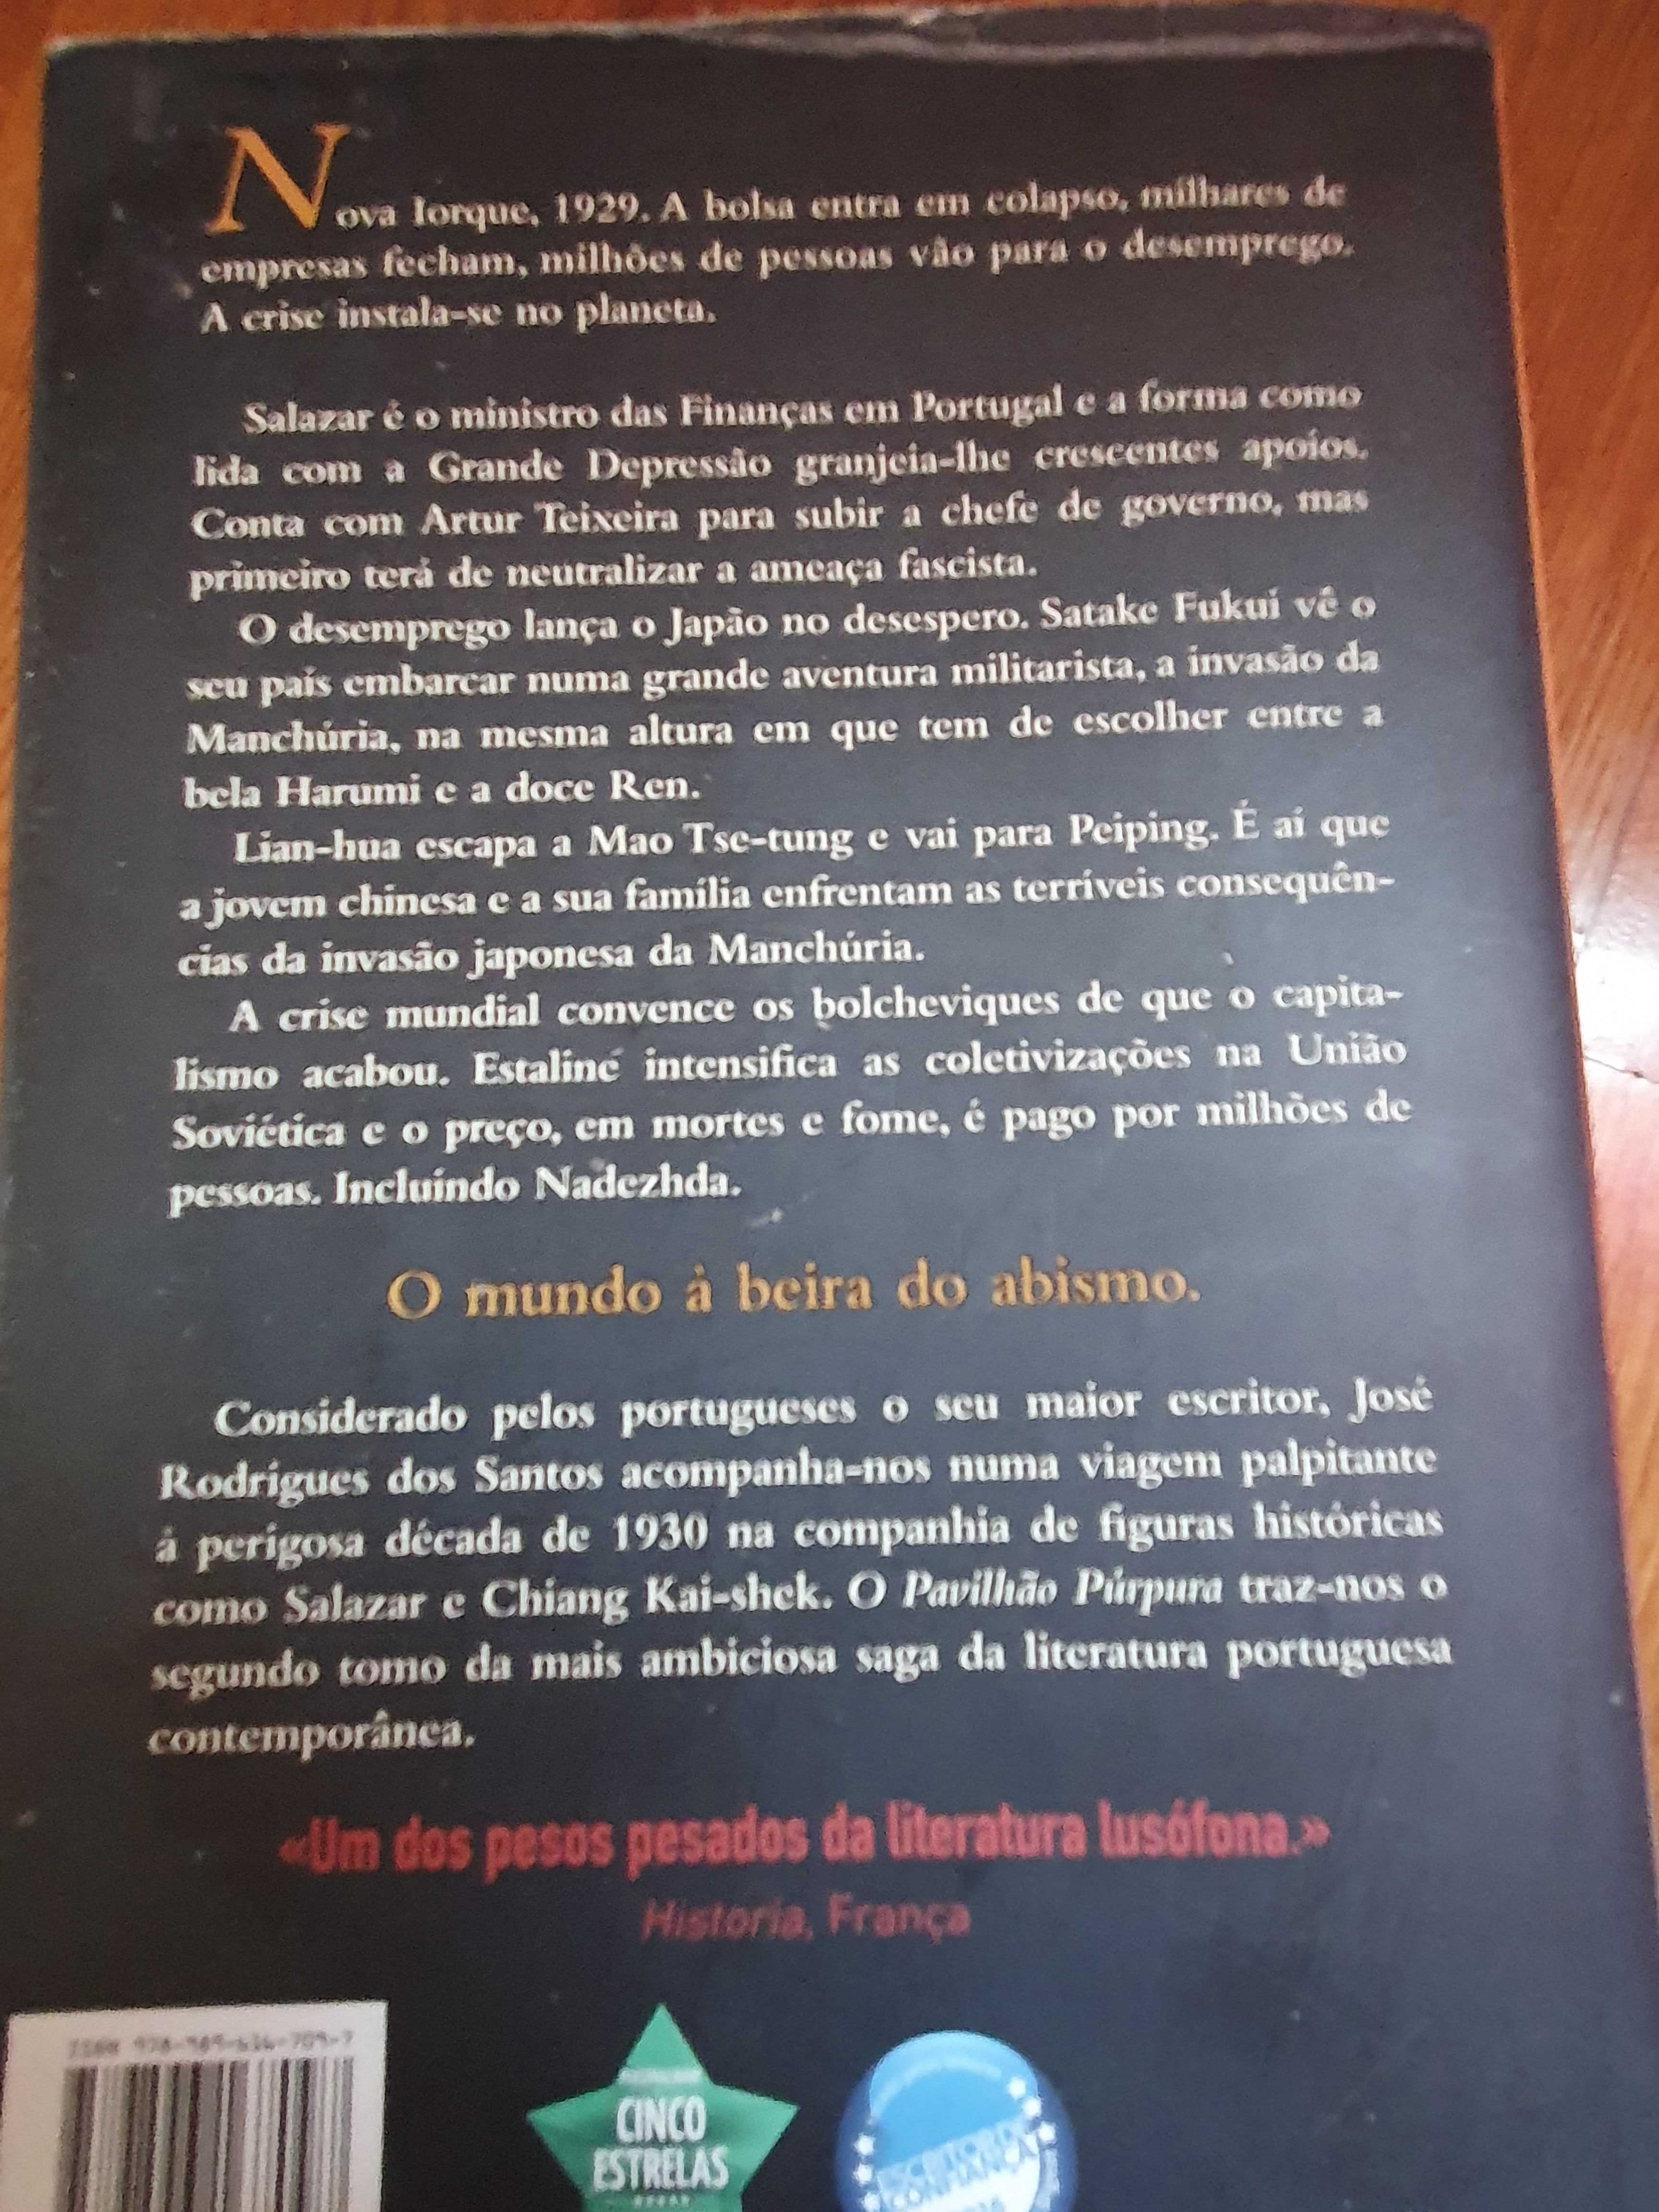 Livros- José Rodrigues dos Santos